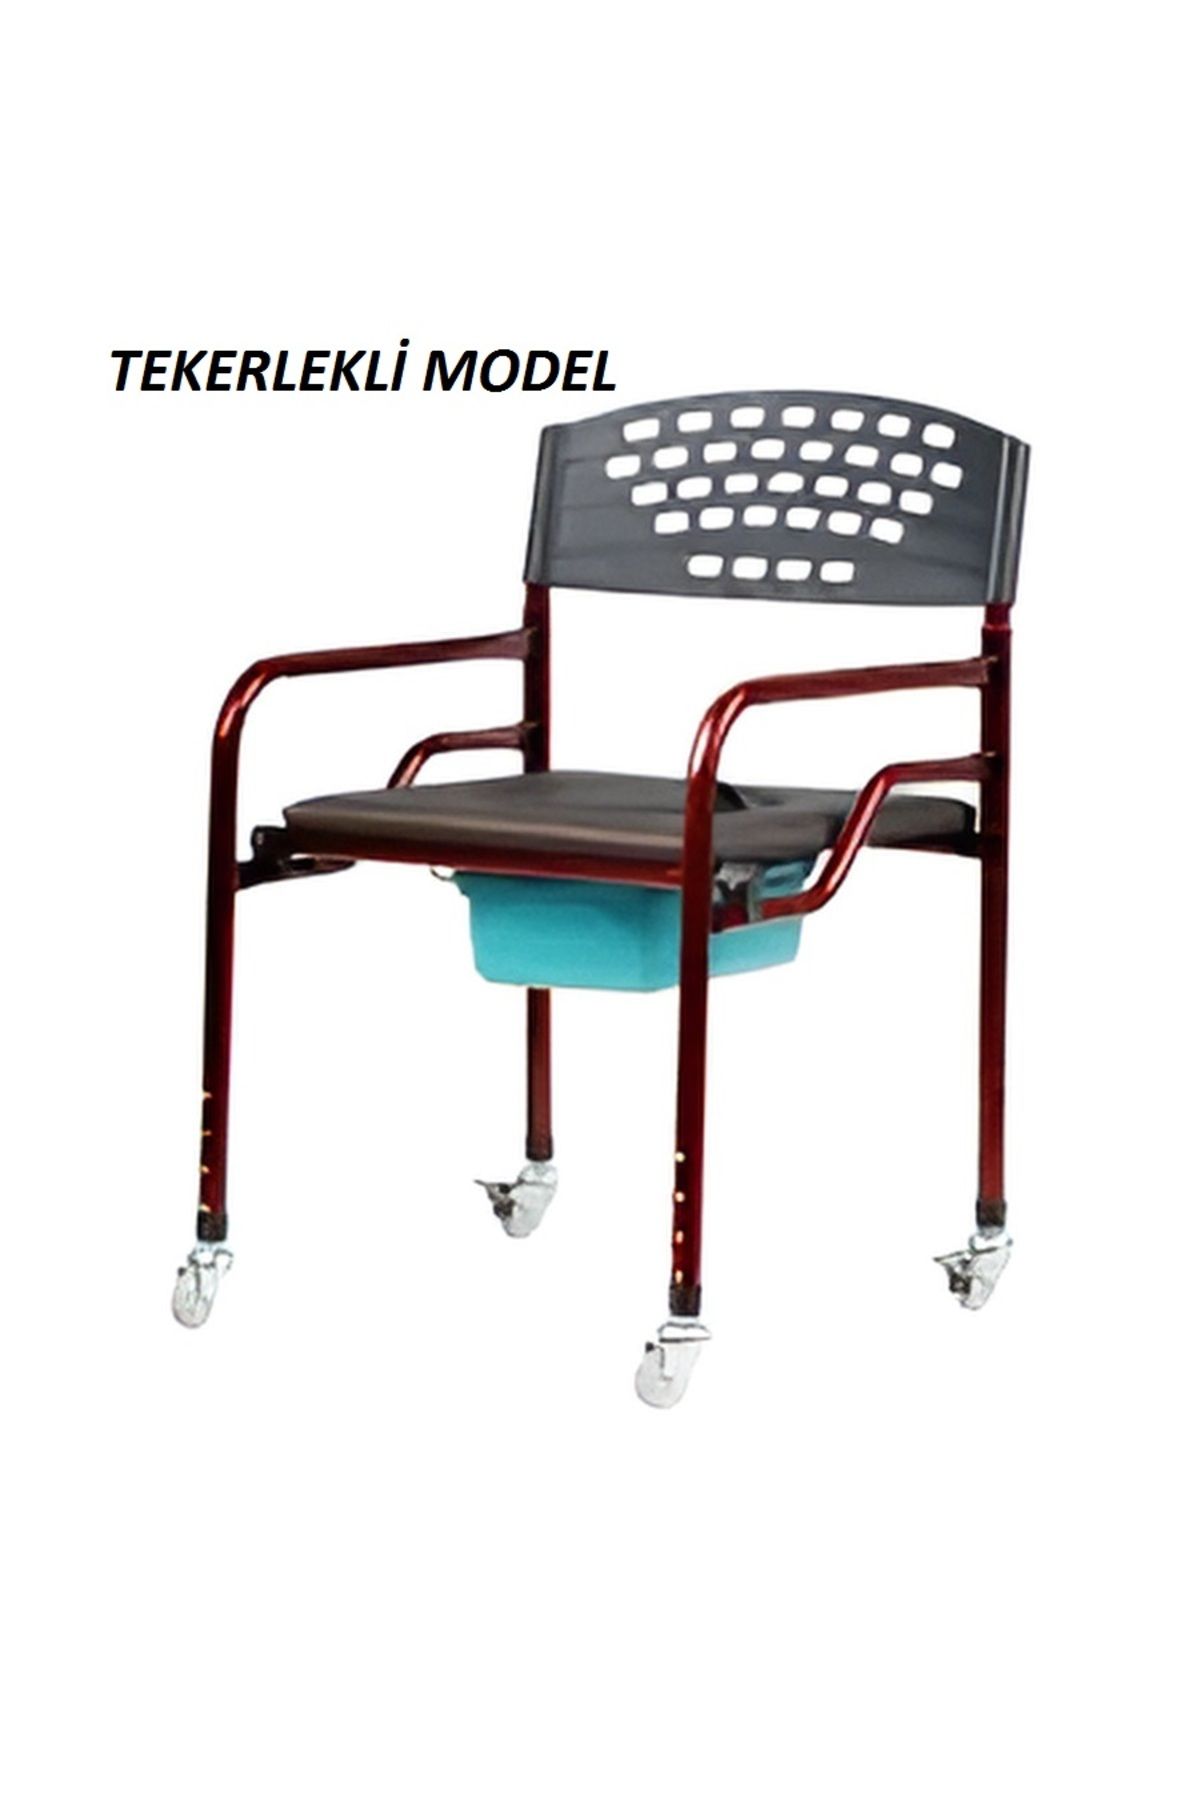 MEDİKALBİM Tekerlekli Katlanabilir Seyyar Hasta Yaşlı Tuvalet Sandalyesi Klozetli Kovalı Wc Oturak